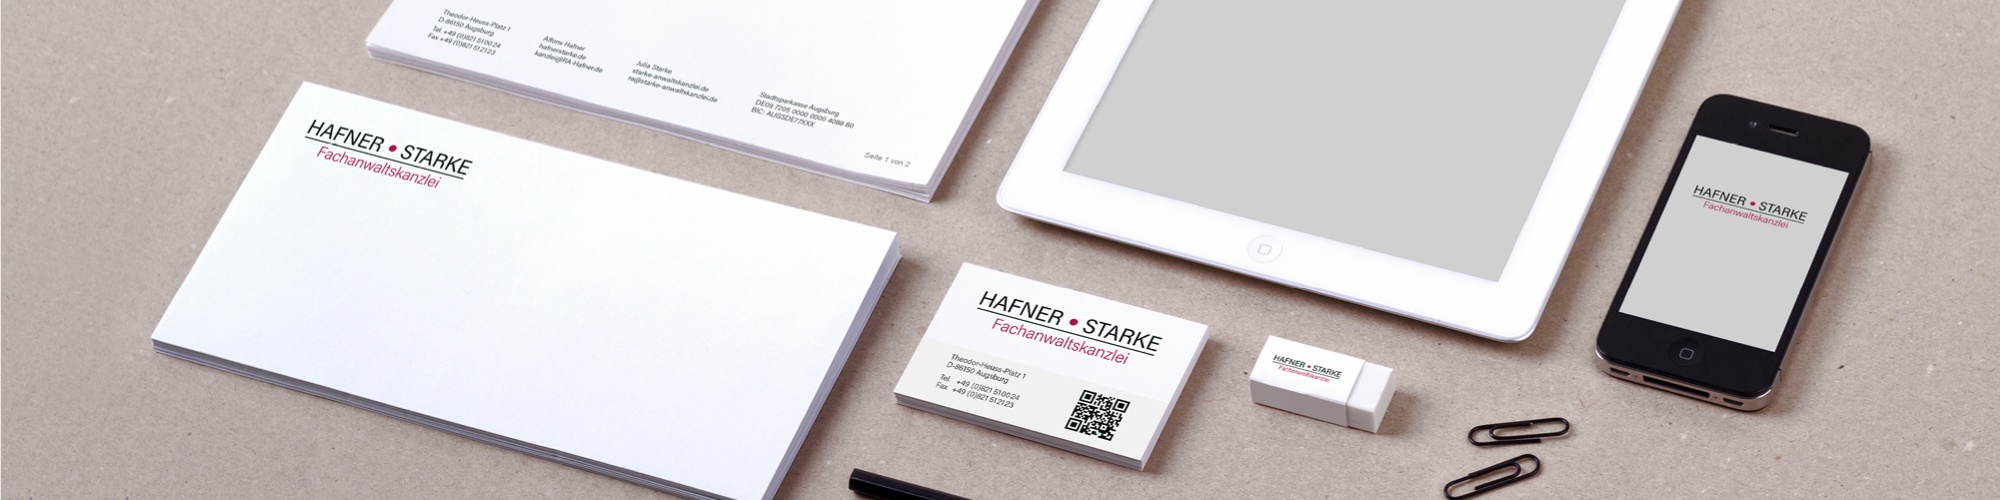 Hafner Starke | Fachanwaltskanzlei: Redesign Logo, Neu-Anpassung und Überarbeitung des Corporate Design, Briefpapier und Wordvorlagen, Visitenkarte, Firmenschild, Ideengebung Website